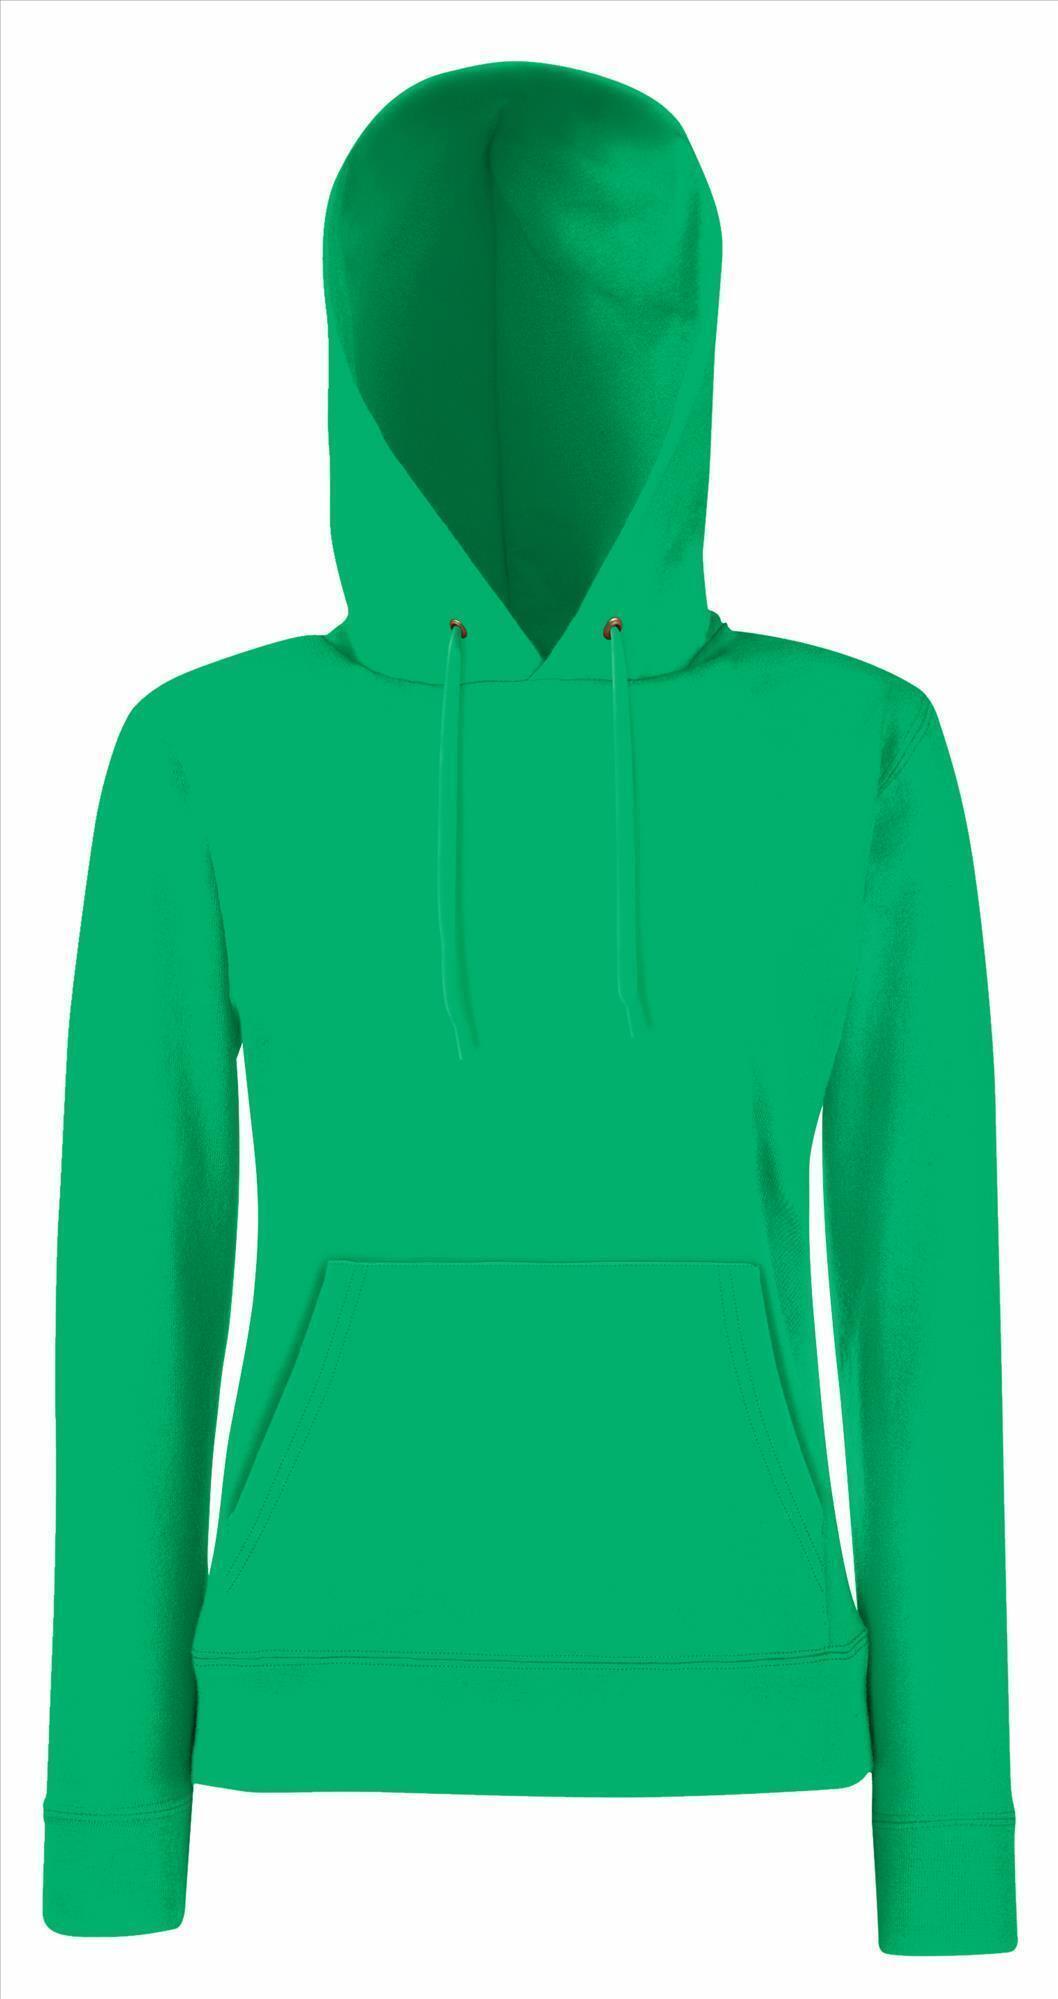 Groene Dames sweater Lady-Fit met gevoerde capuchon hooded groen kelly green